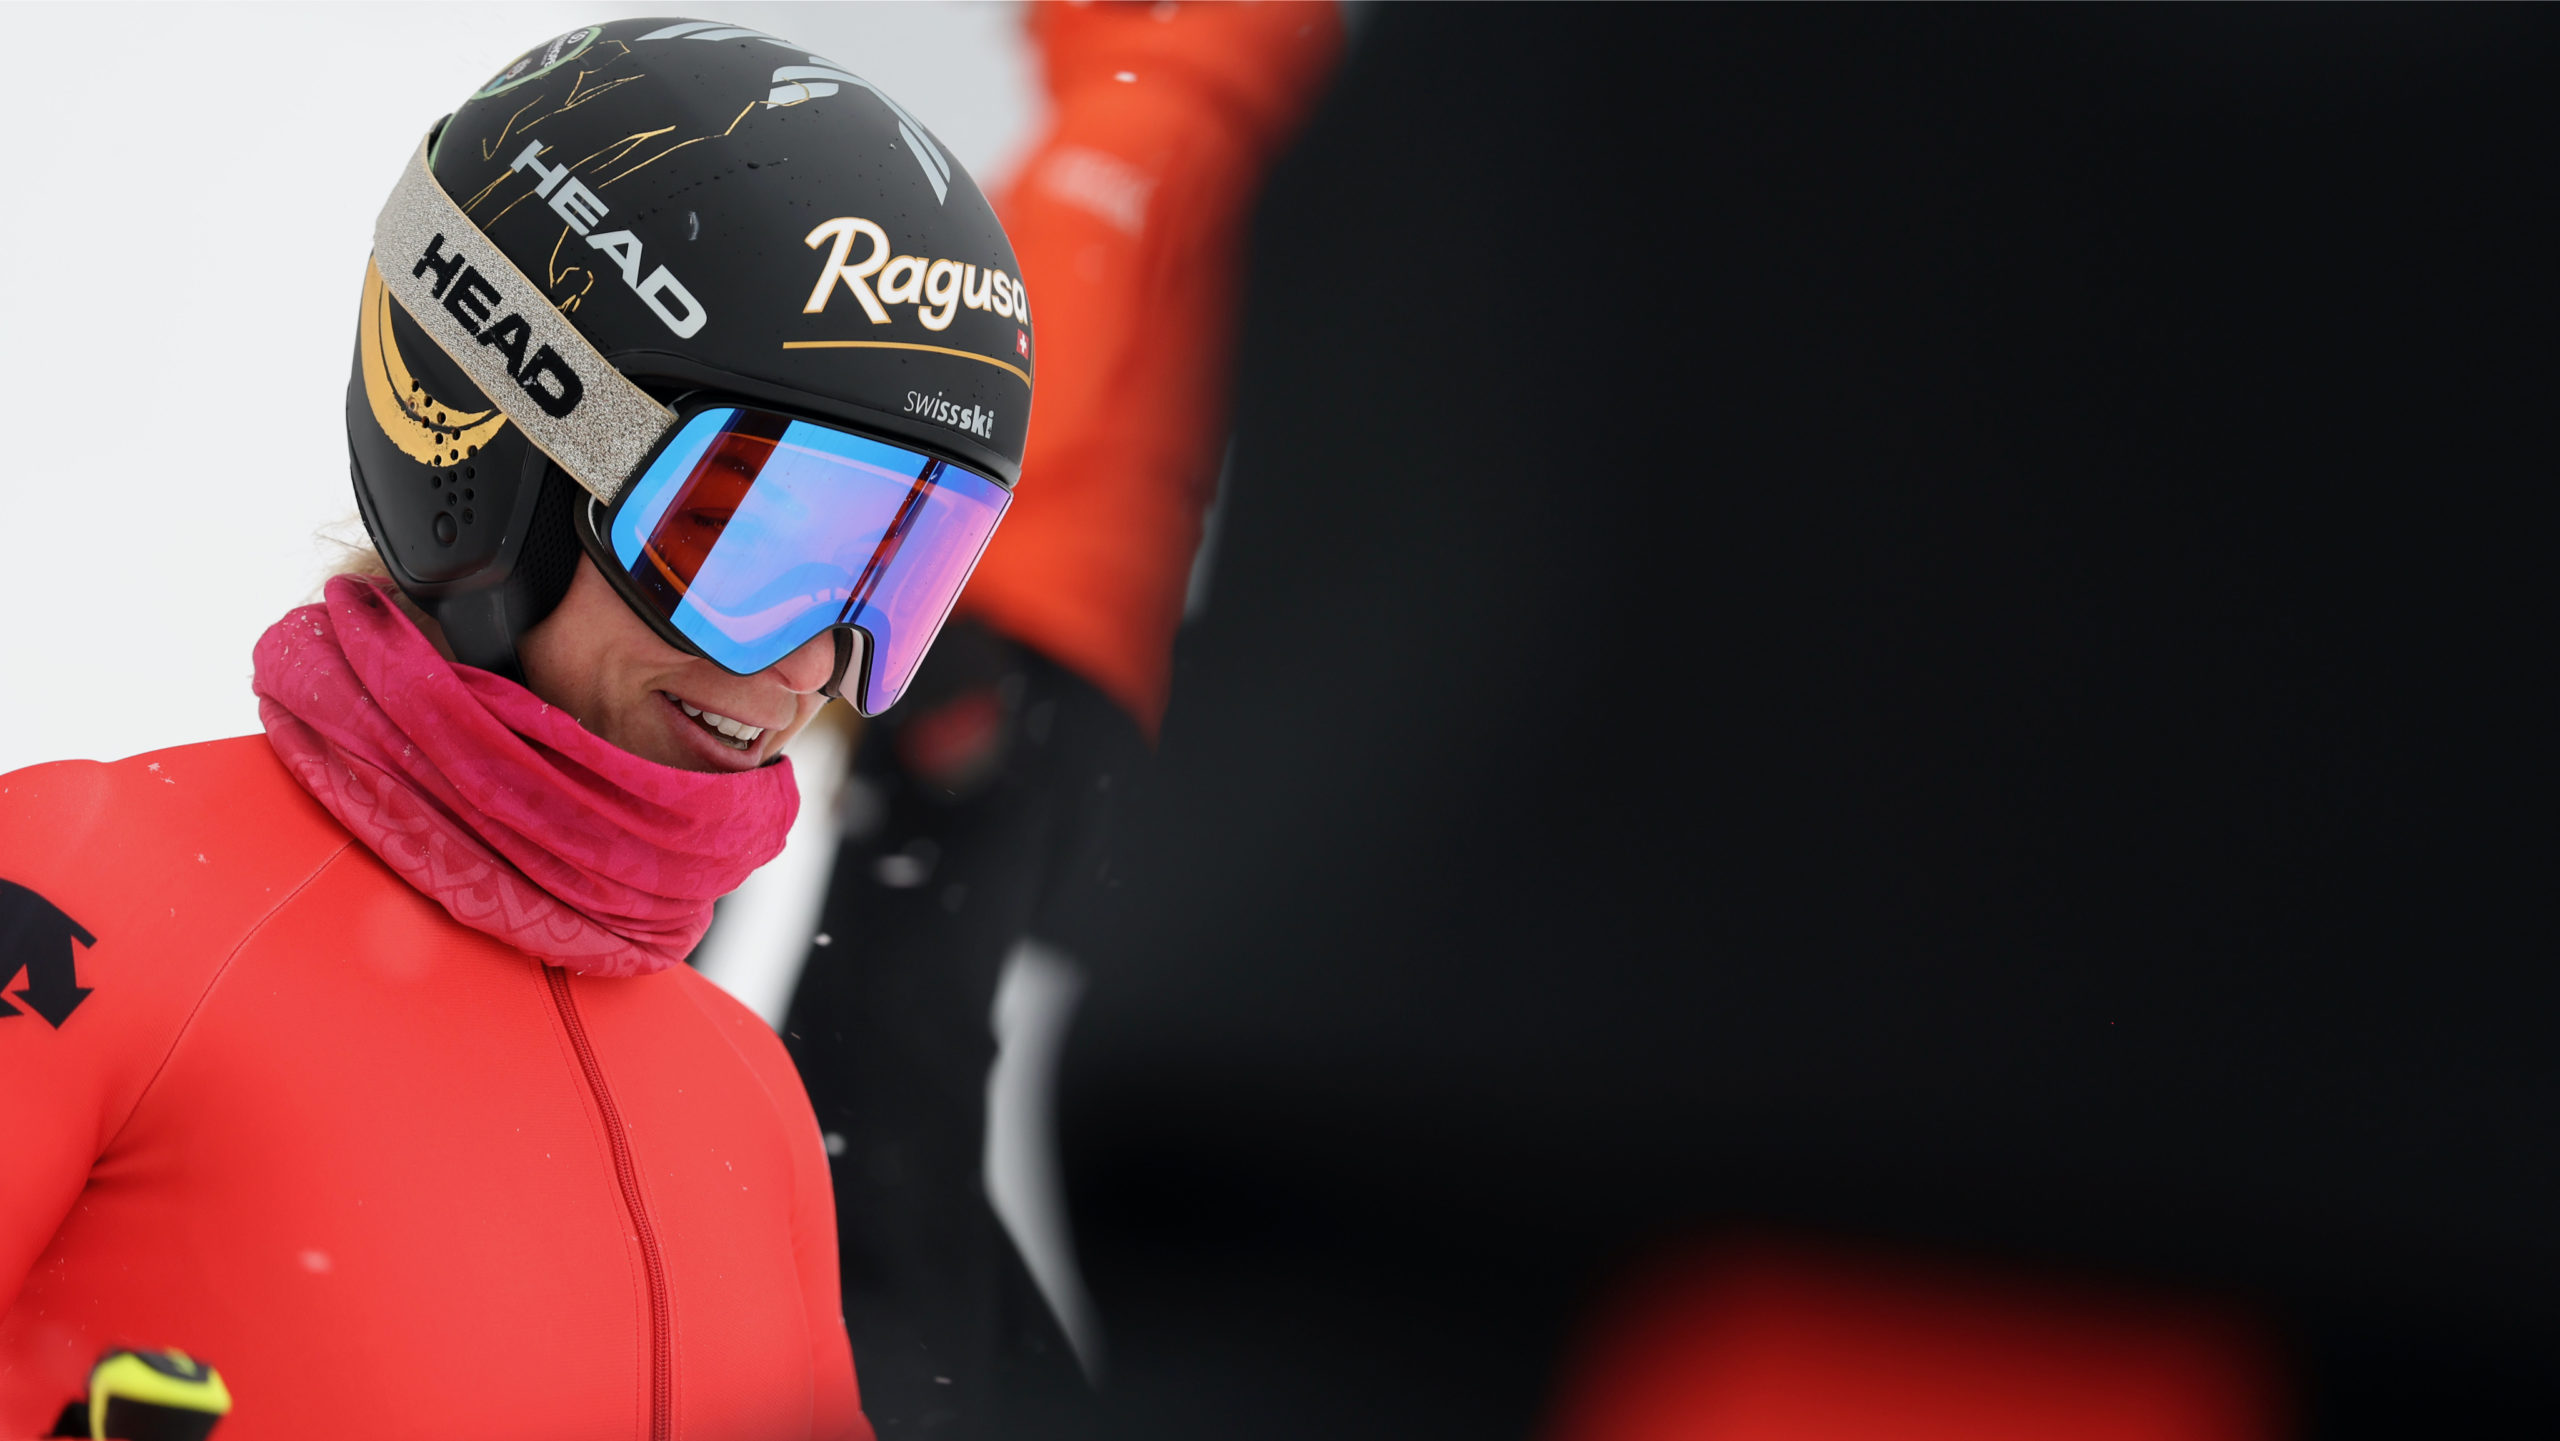 Neuf Suissesses pour lancer la saison de vitesse | SkiActu.ch